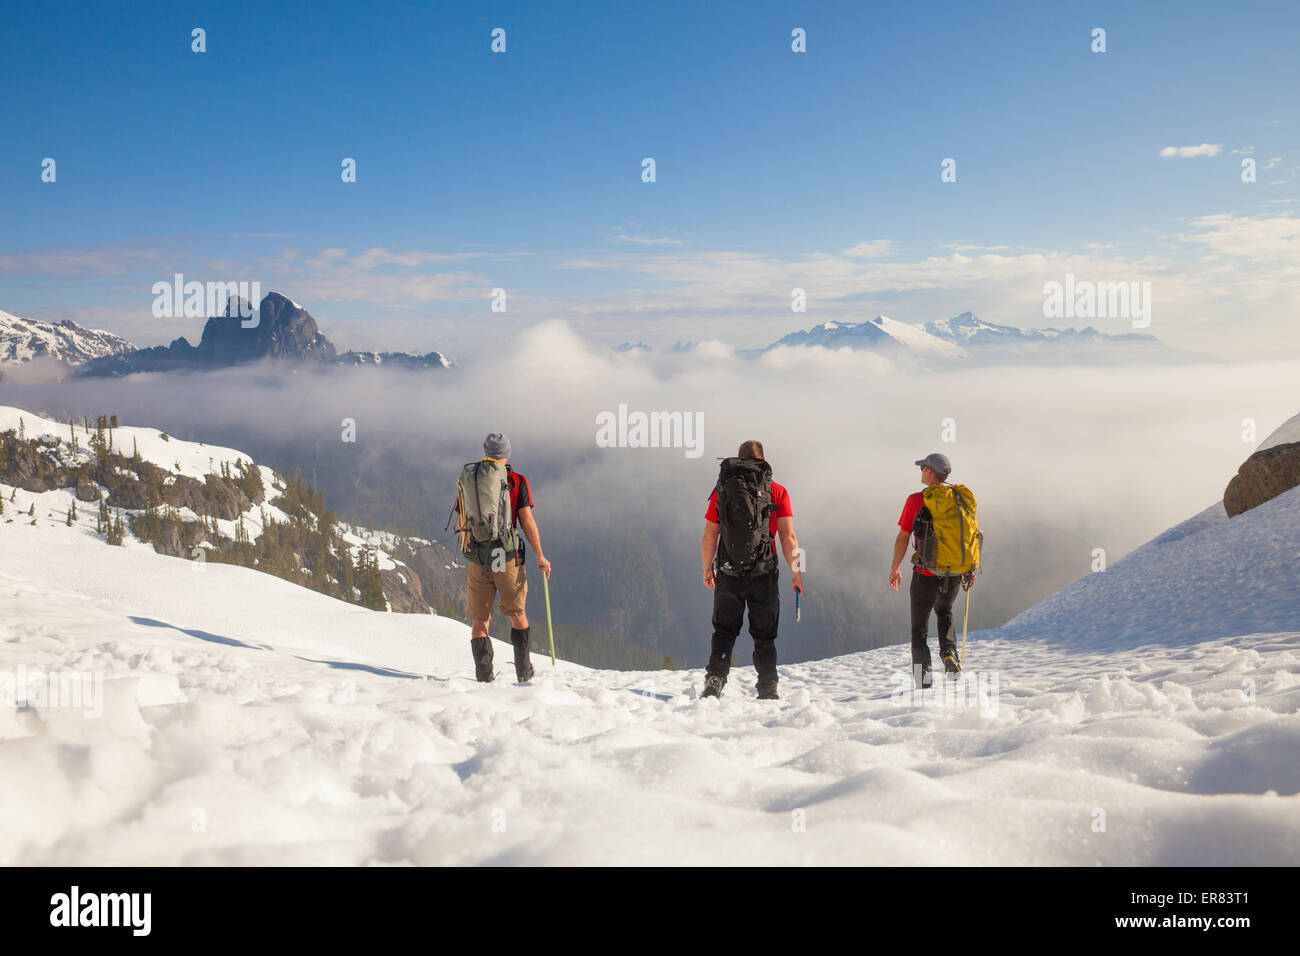 Tres mochileros cruzar un campo de nieve después de un viaje a las montañas. Foto de stock